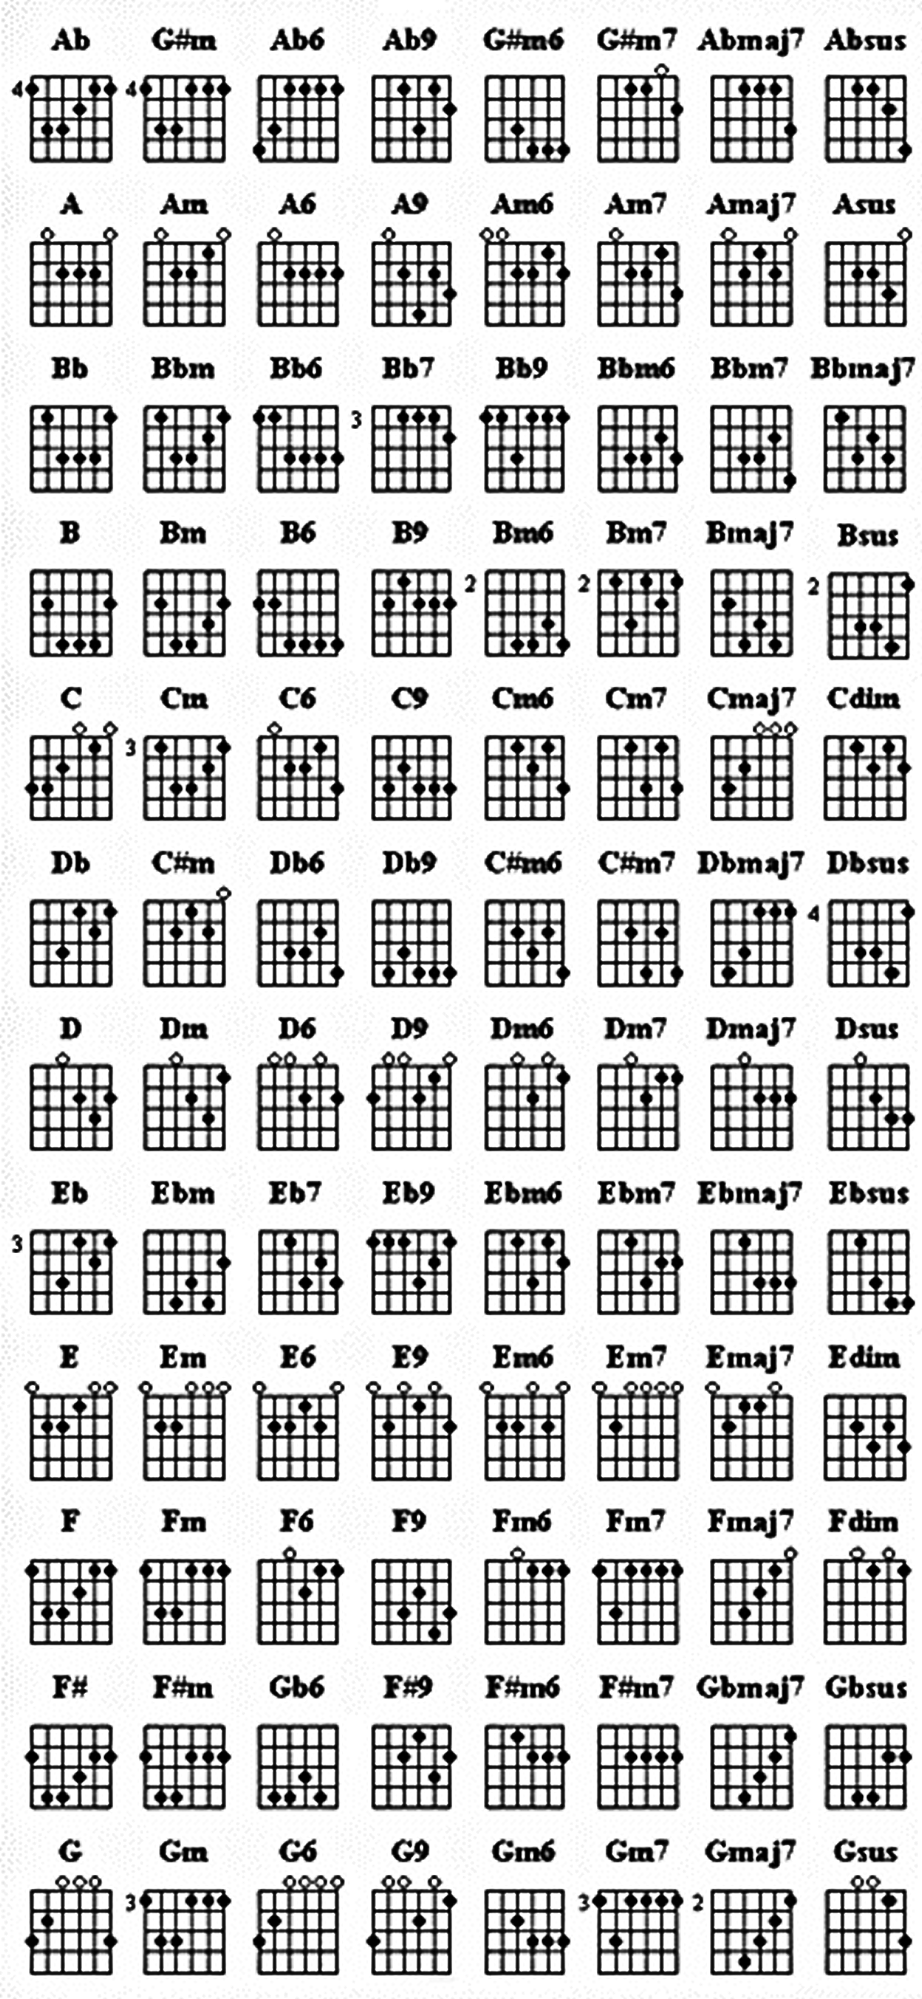 c1 chord guitar